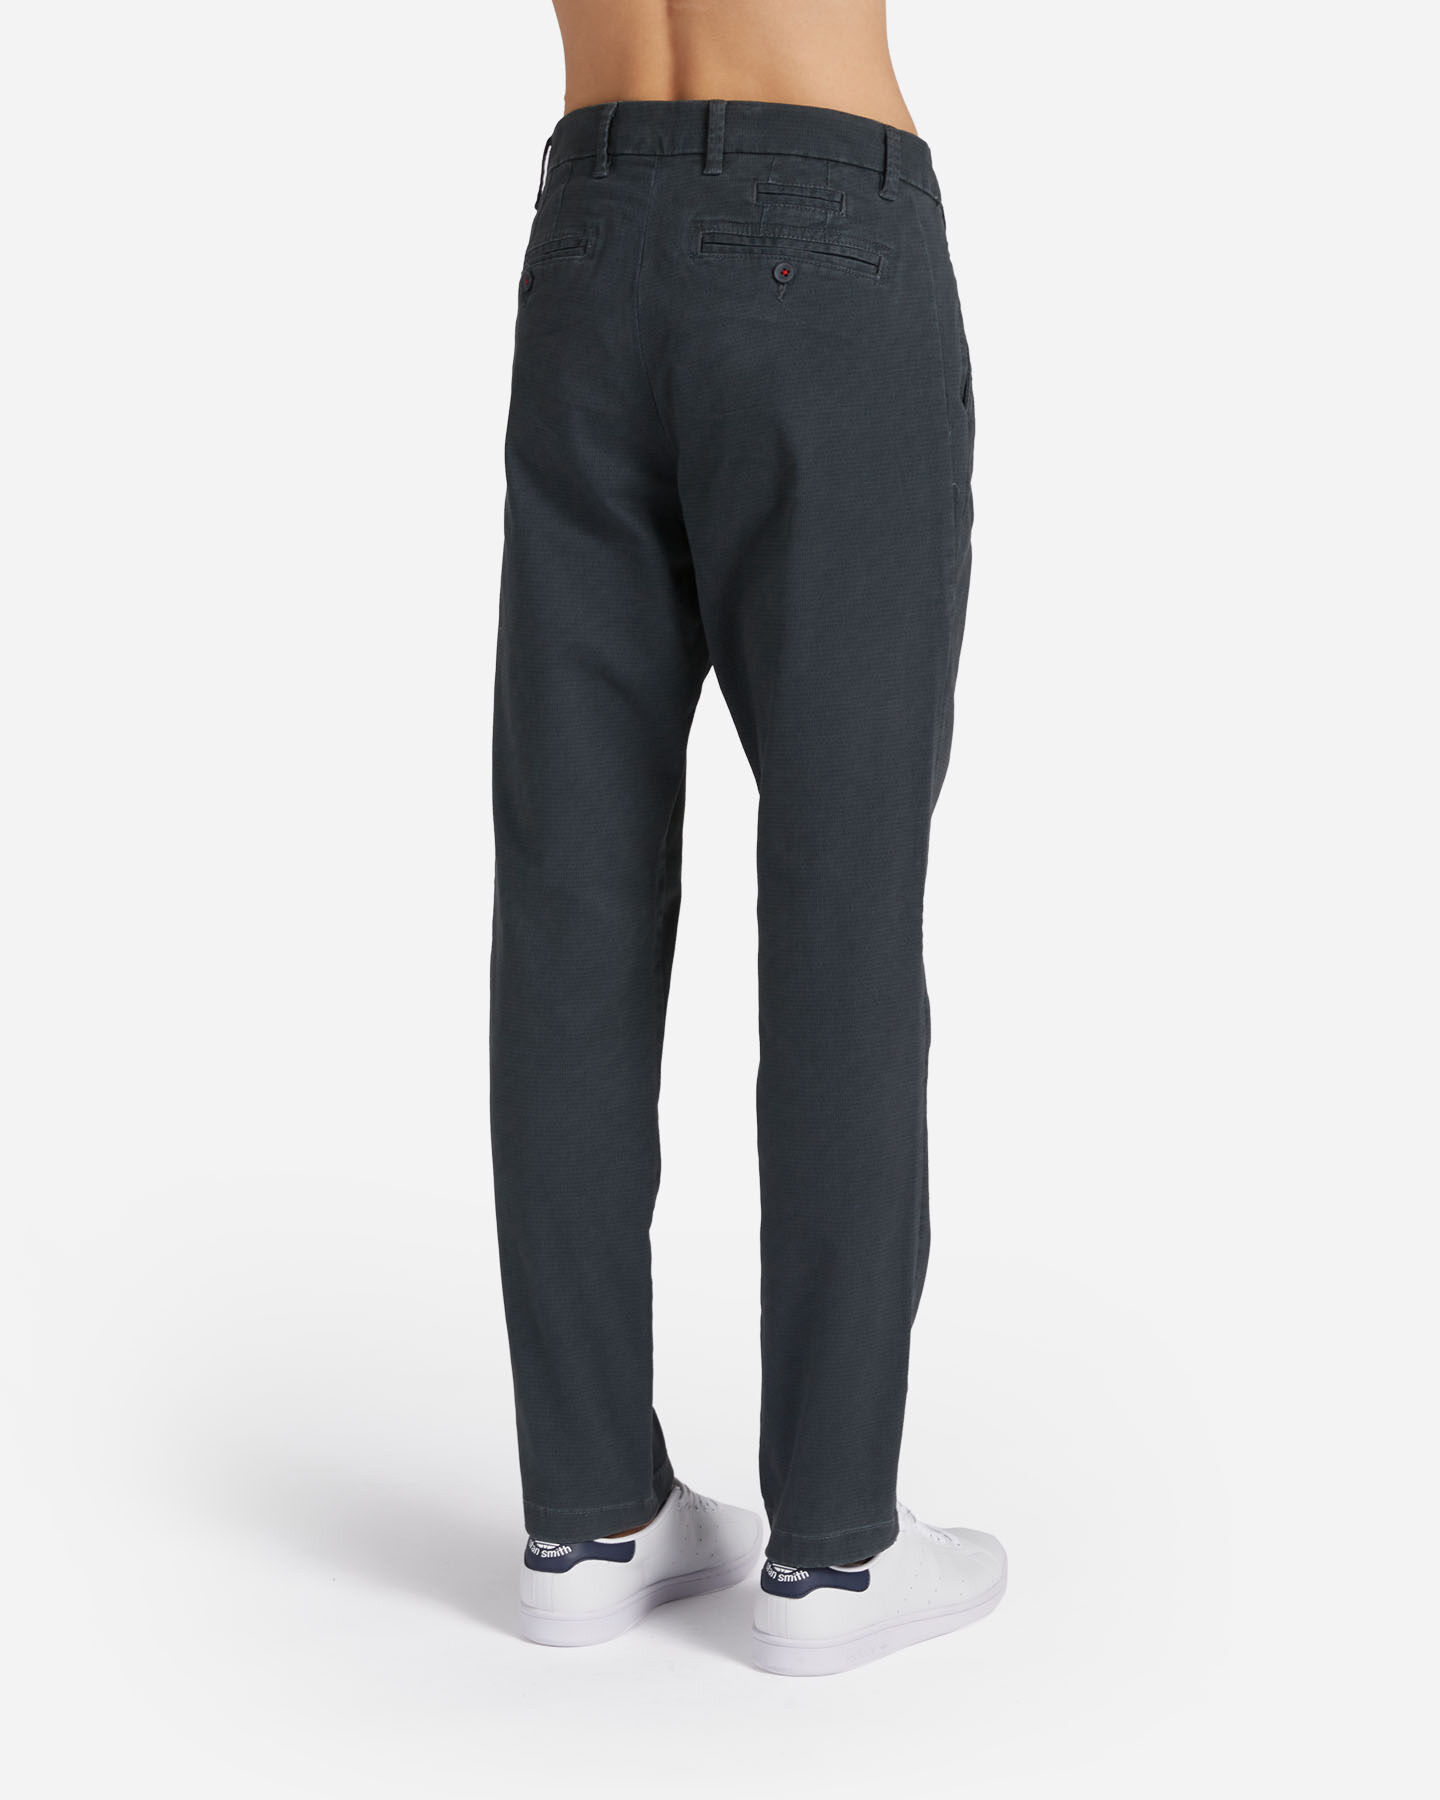  Pantalone DACK'S URBAN M S4125379|044|50 scatto 1